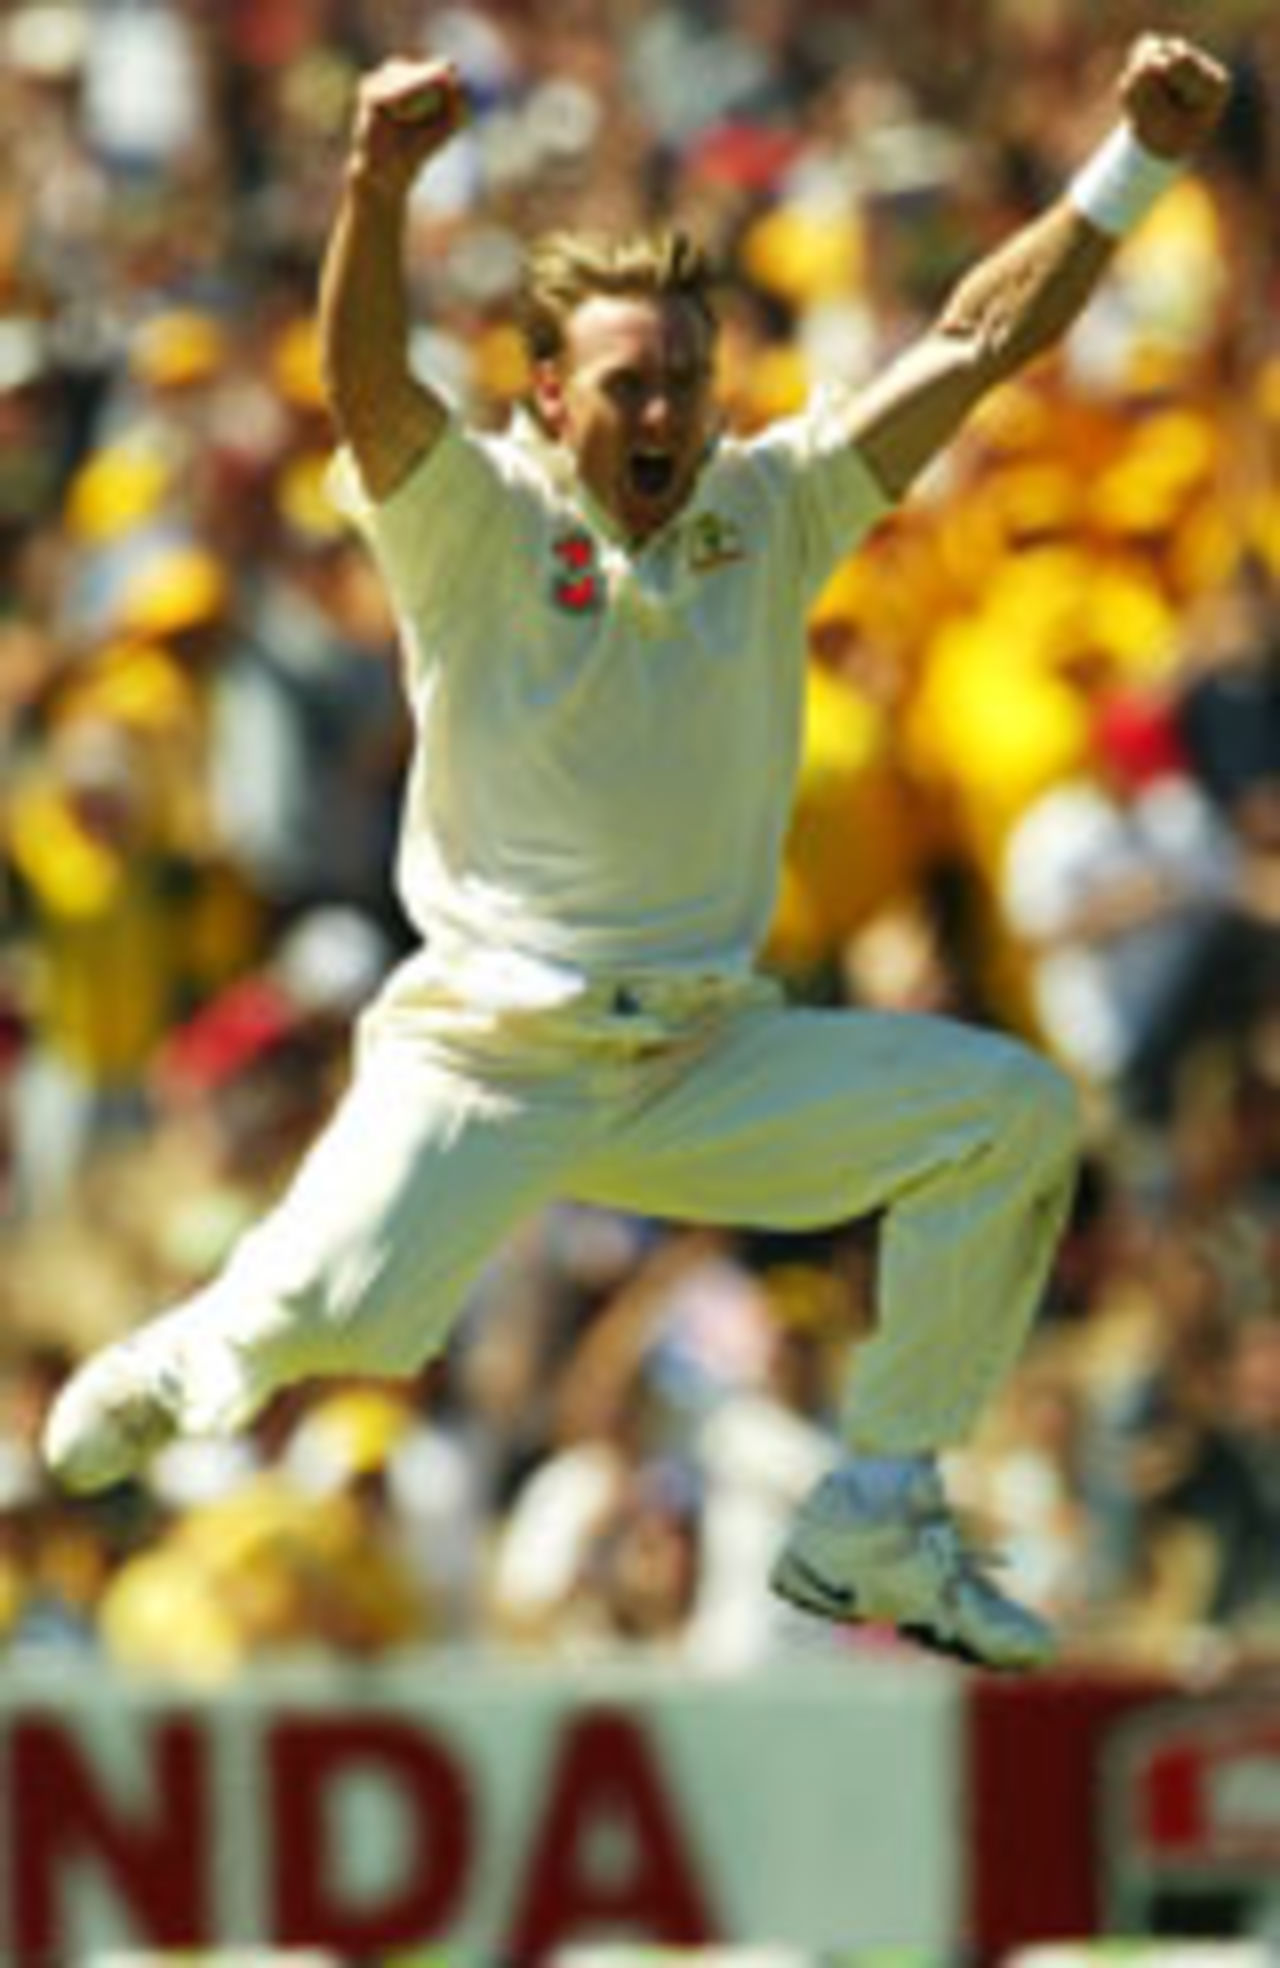 Bichel is ecstatic after dismissing Virender Sehwag, Australia v India, 2nd Test, Adelaide, 2nd day, December 13, 2003